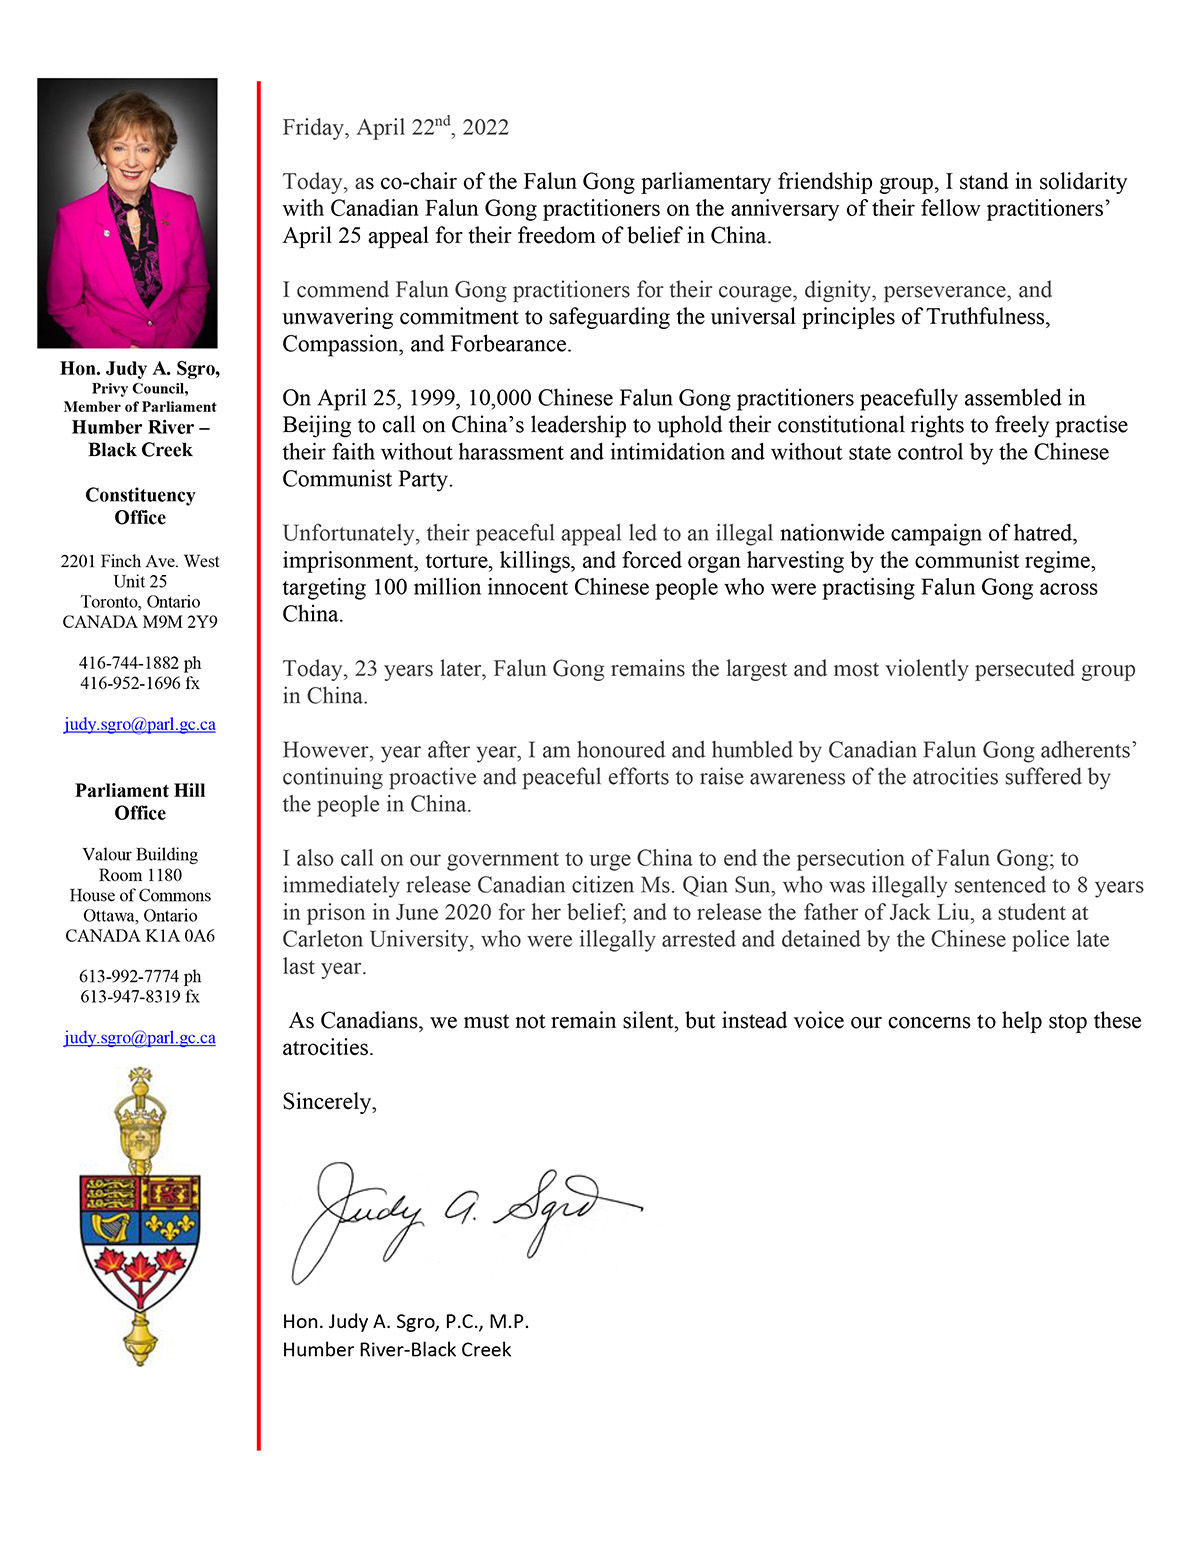 Image for article ​Ottawa, Canadá: Membro do Parlamento elogia o apelo pacífico de 25 de abril